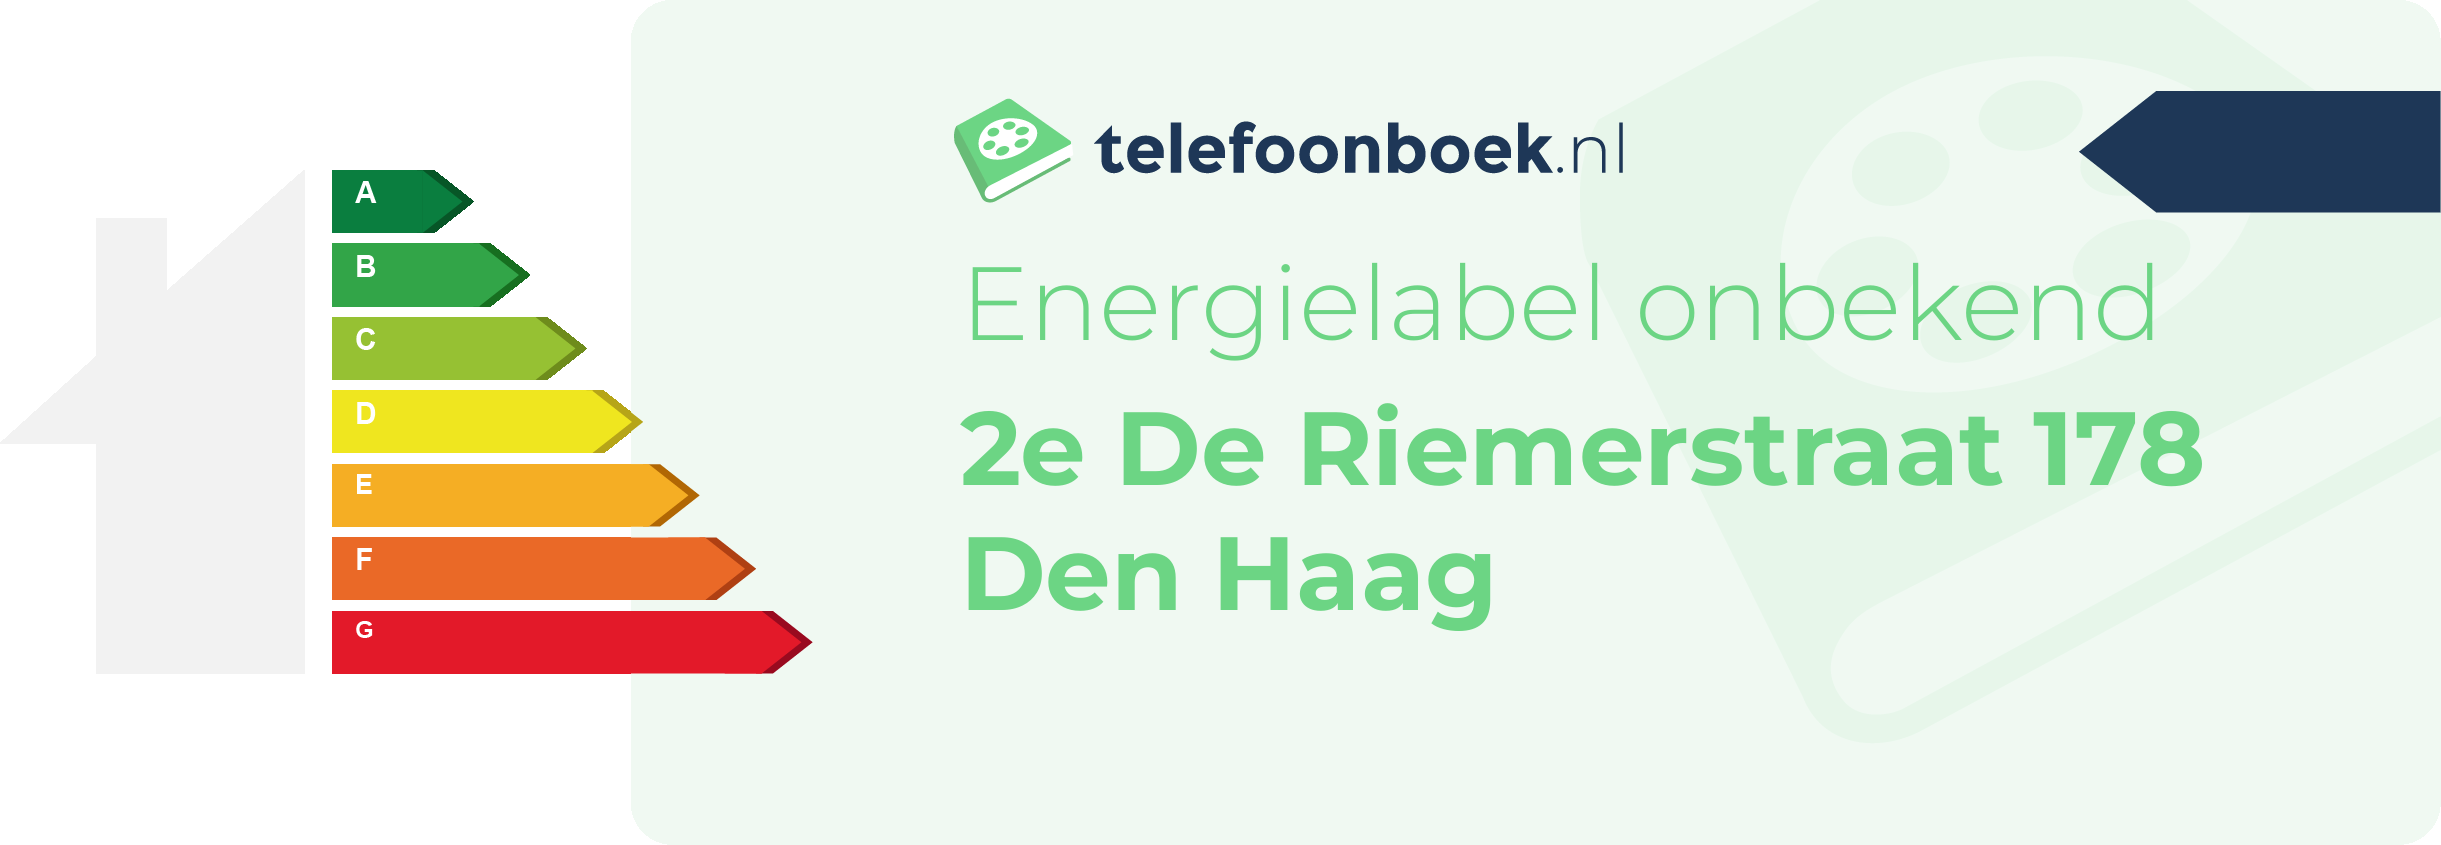 Energielabel 2e De Riemerstraat 178 Den Haag